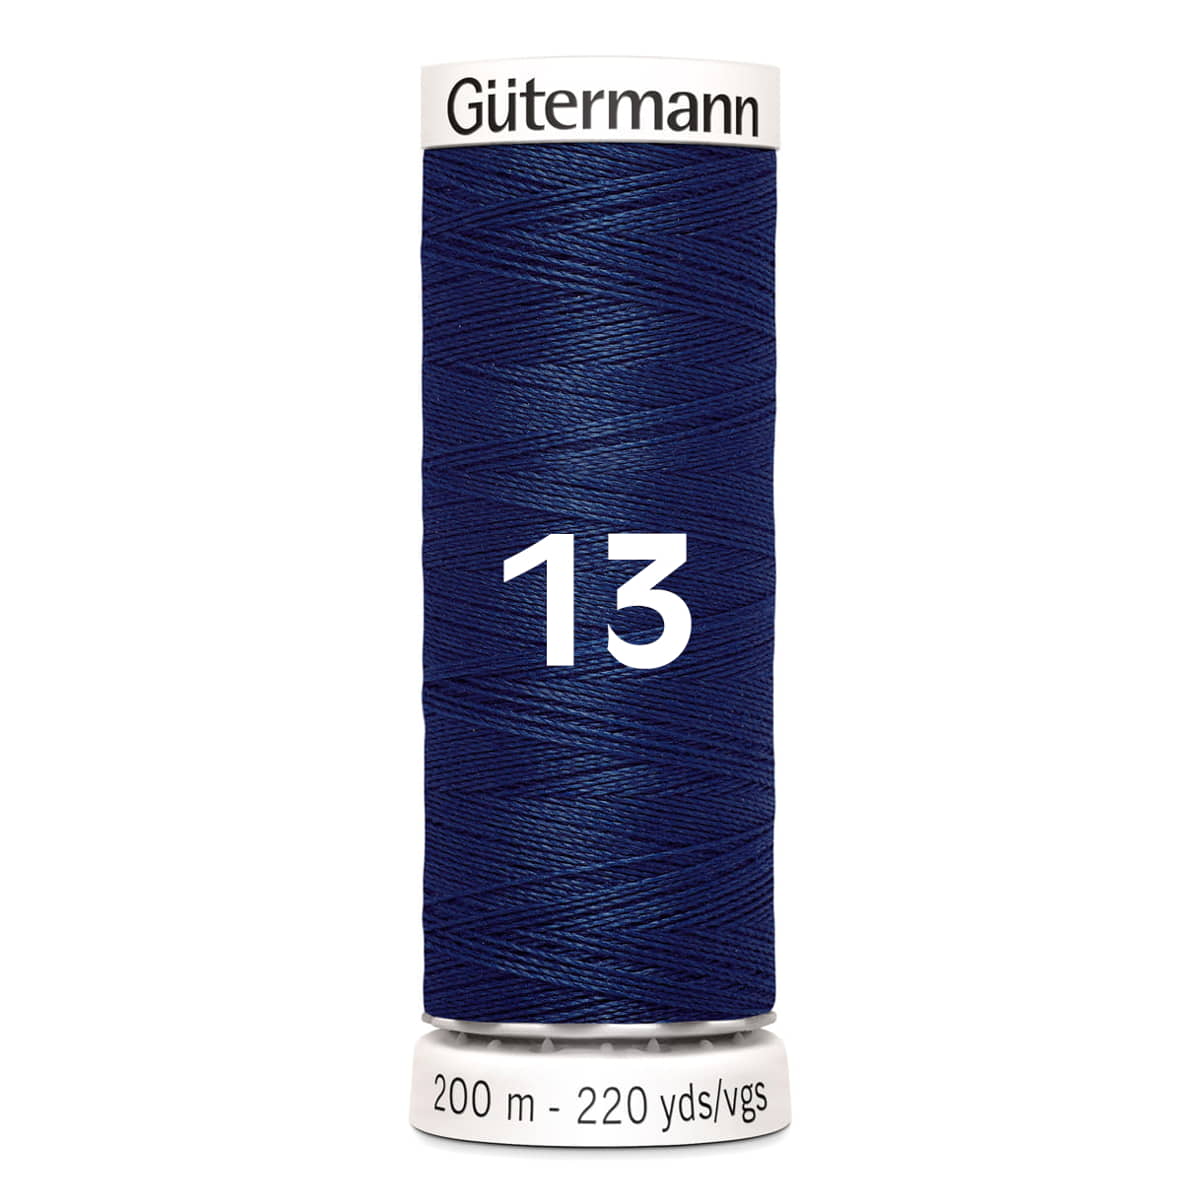 Gutermann garen | 200m | 13 donker blauw naaigaren GM-200-13-DBLUE 4008015026349 - Fourniturenkraam.nl